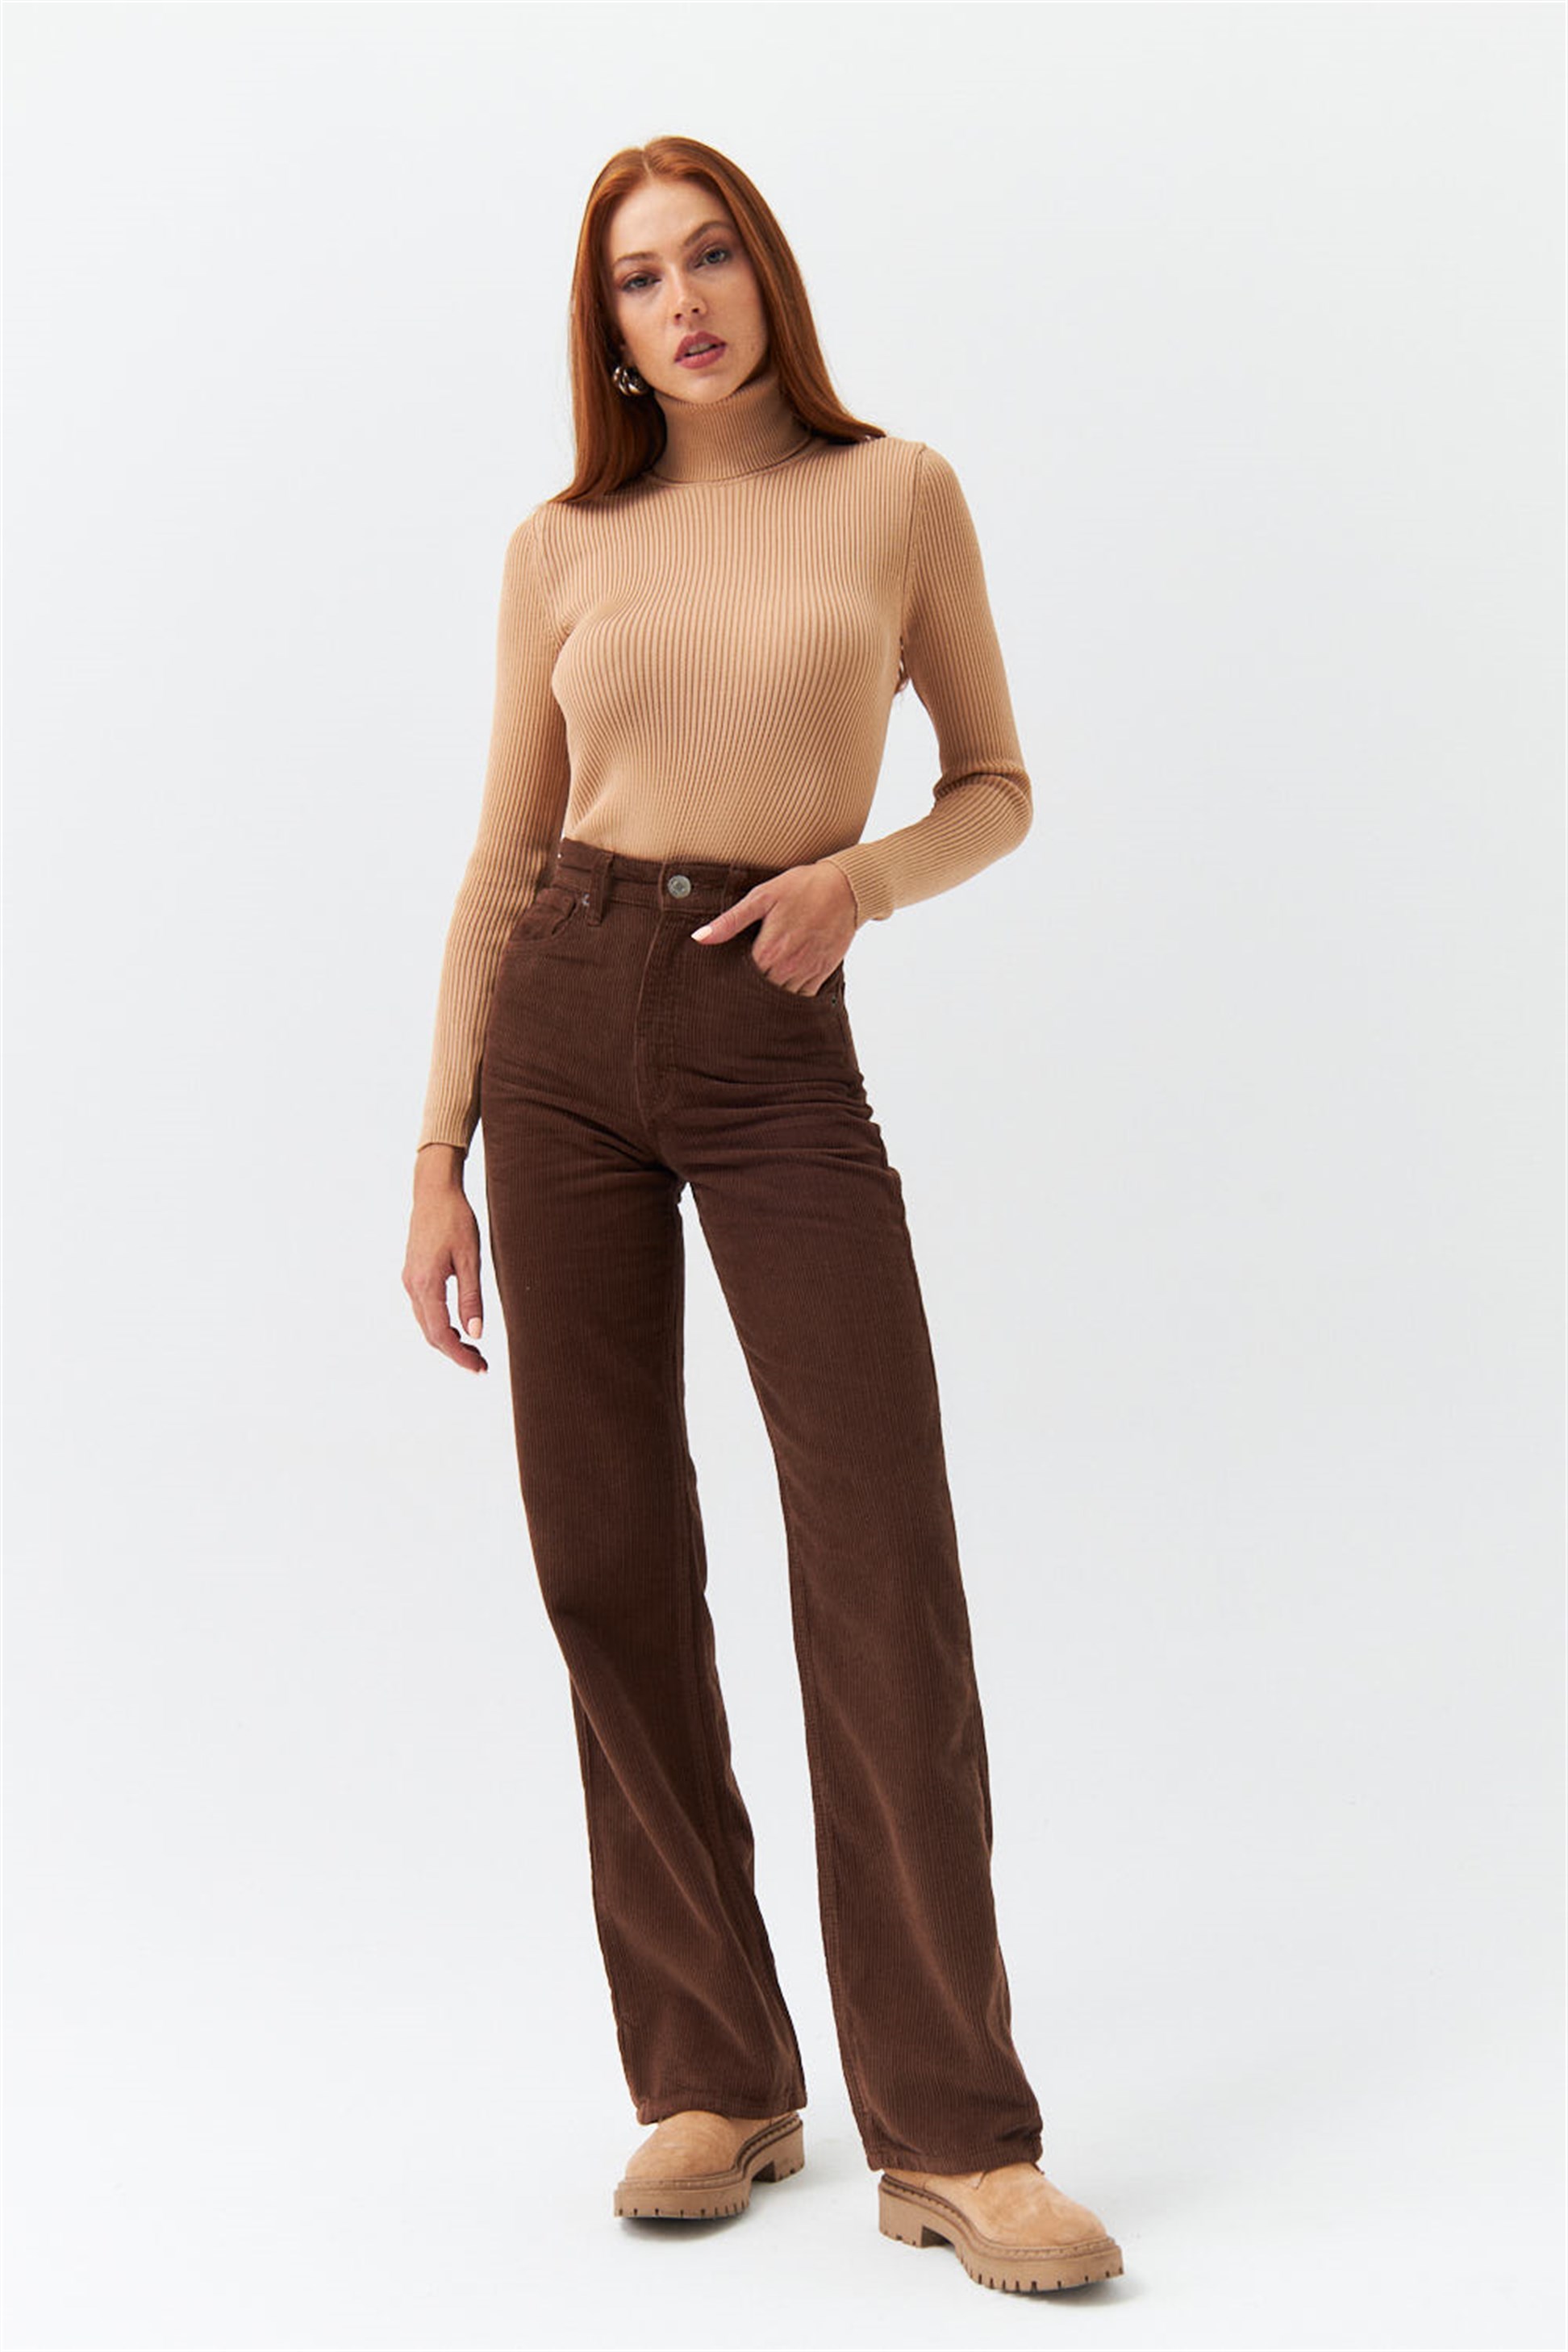 Velvet High Waist Brown Women's Trousers